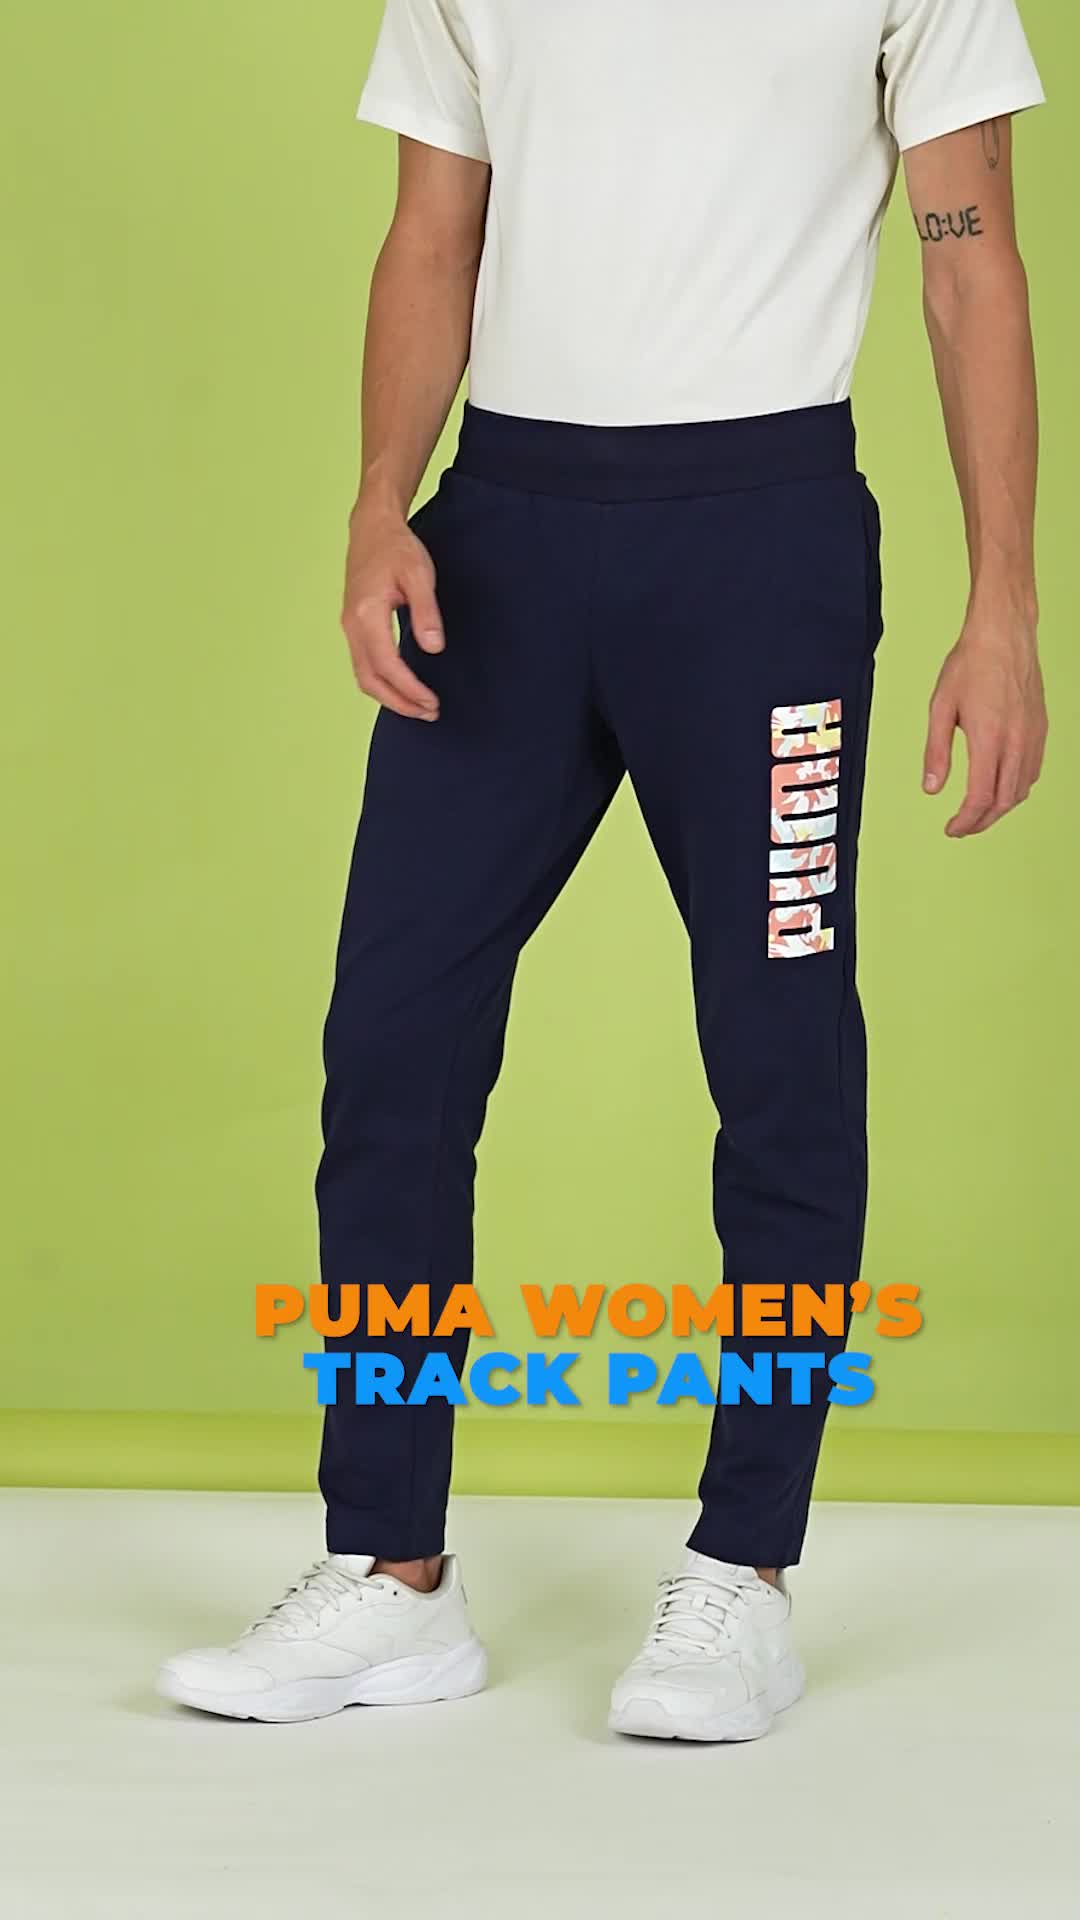 PUMA Women's Track Pants